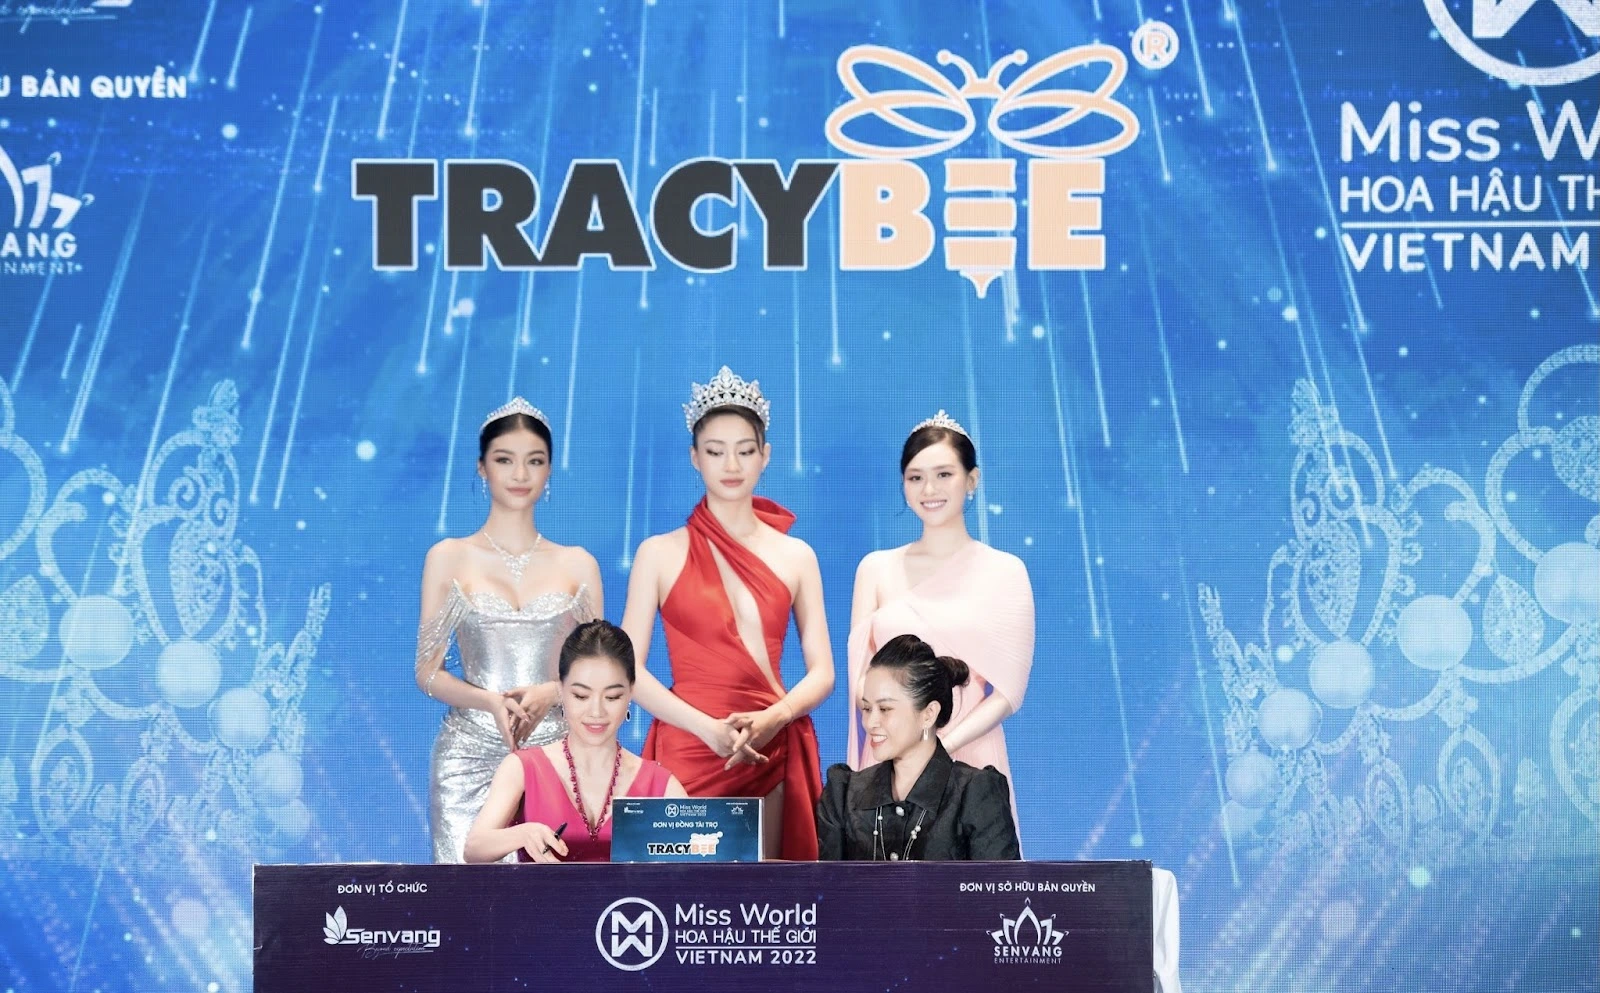 Tracybee ký kết tài trợ Miss World Việt Nam 